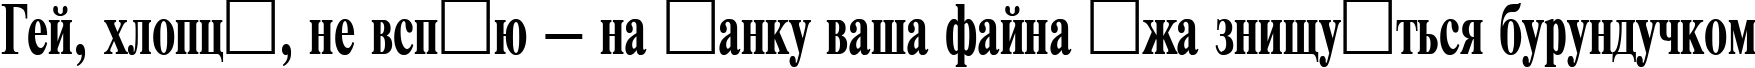 Пример написания шрифтом TimesET65B текста на украинском